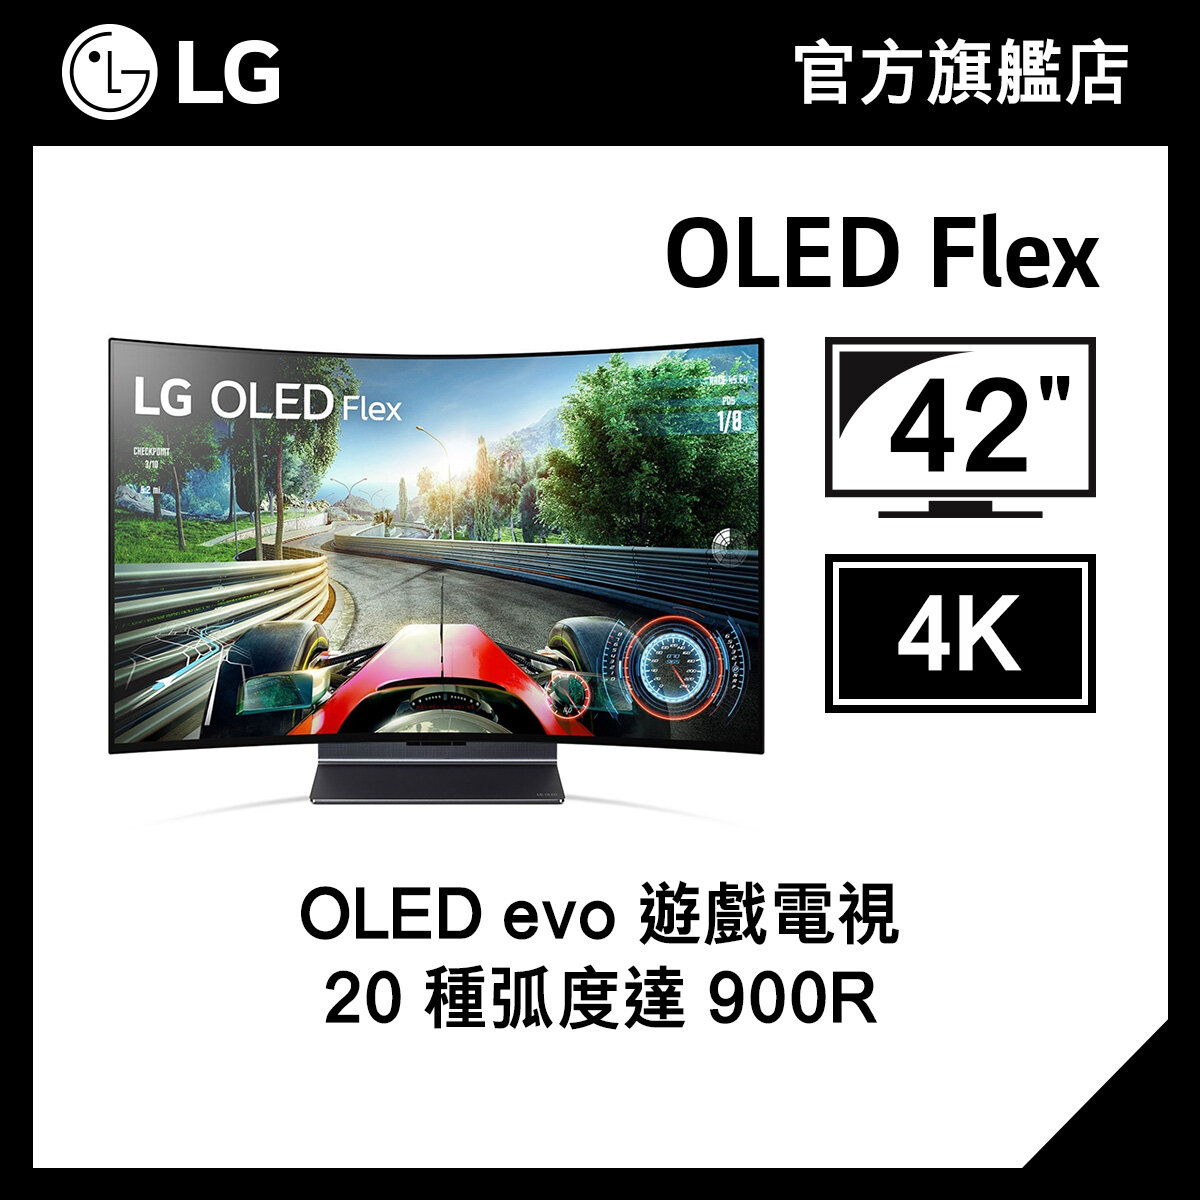 42" LG OLED Flex